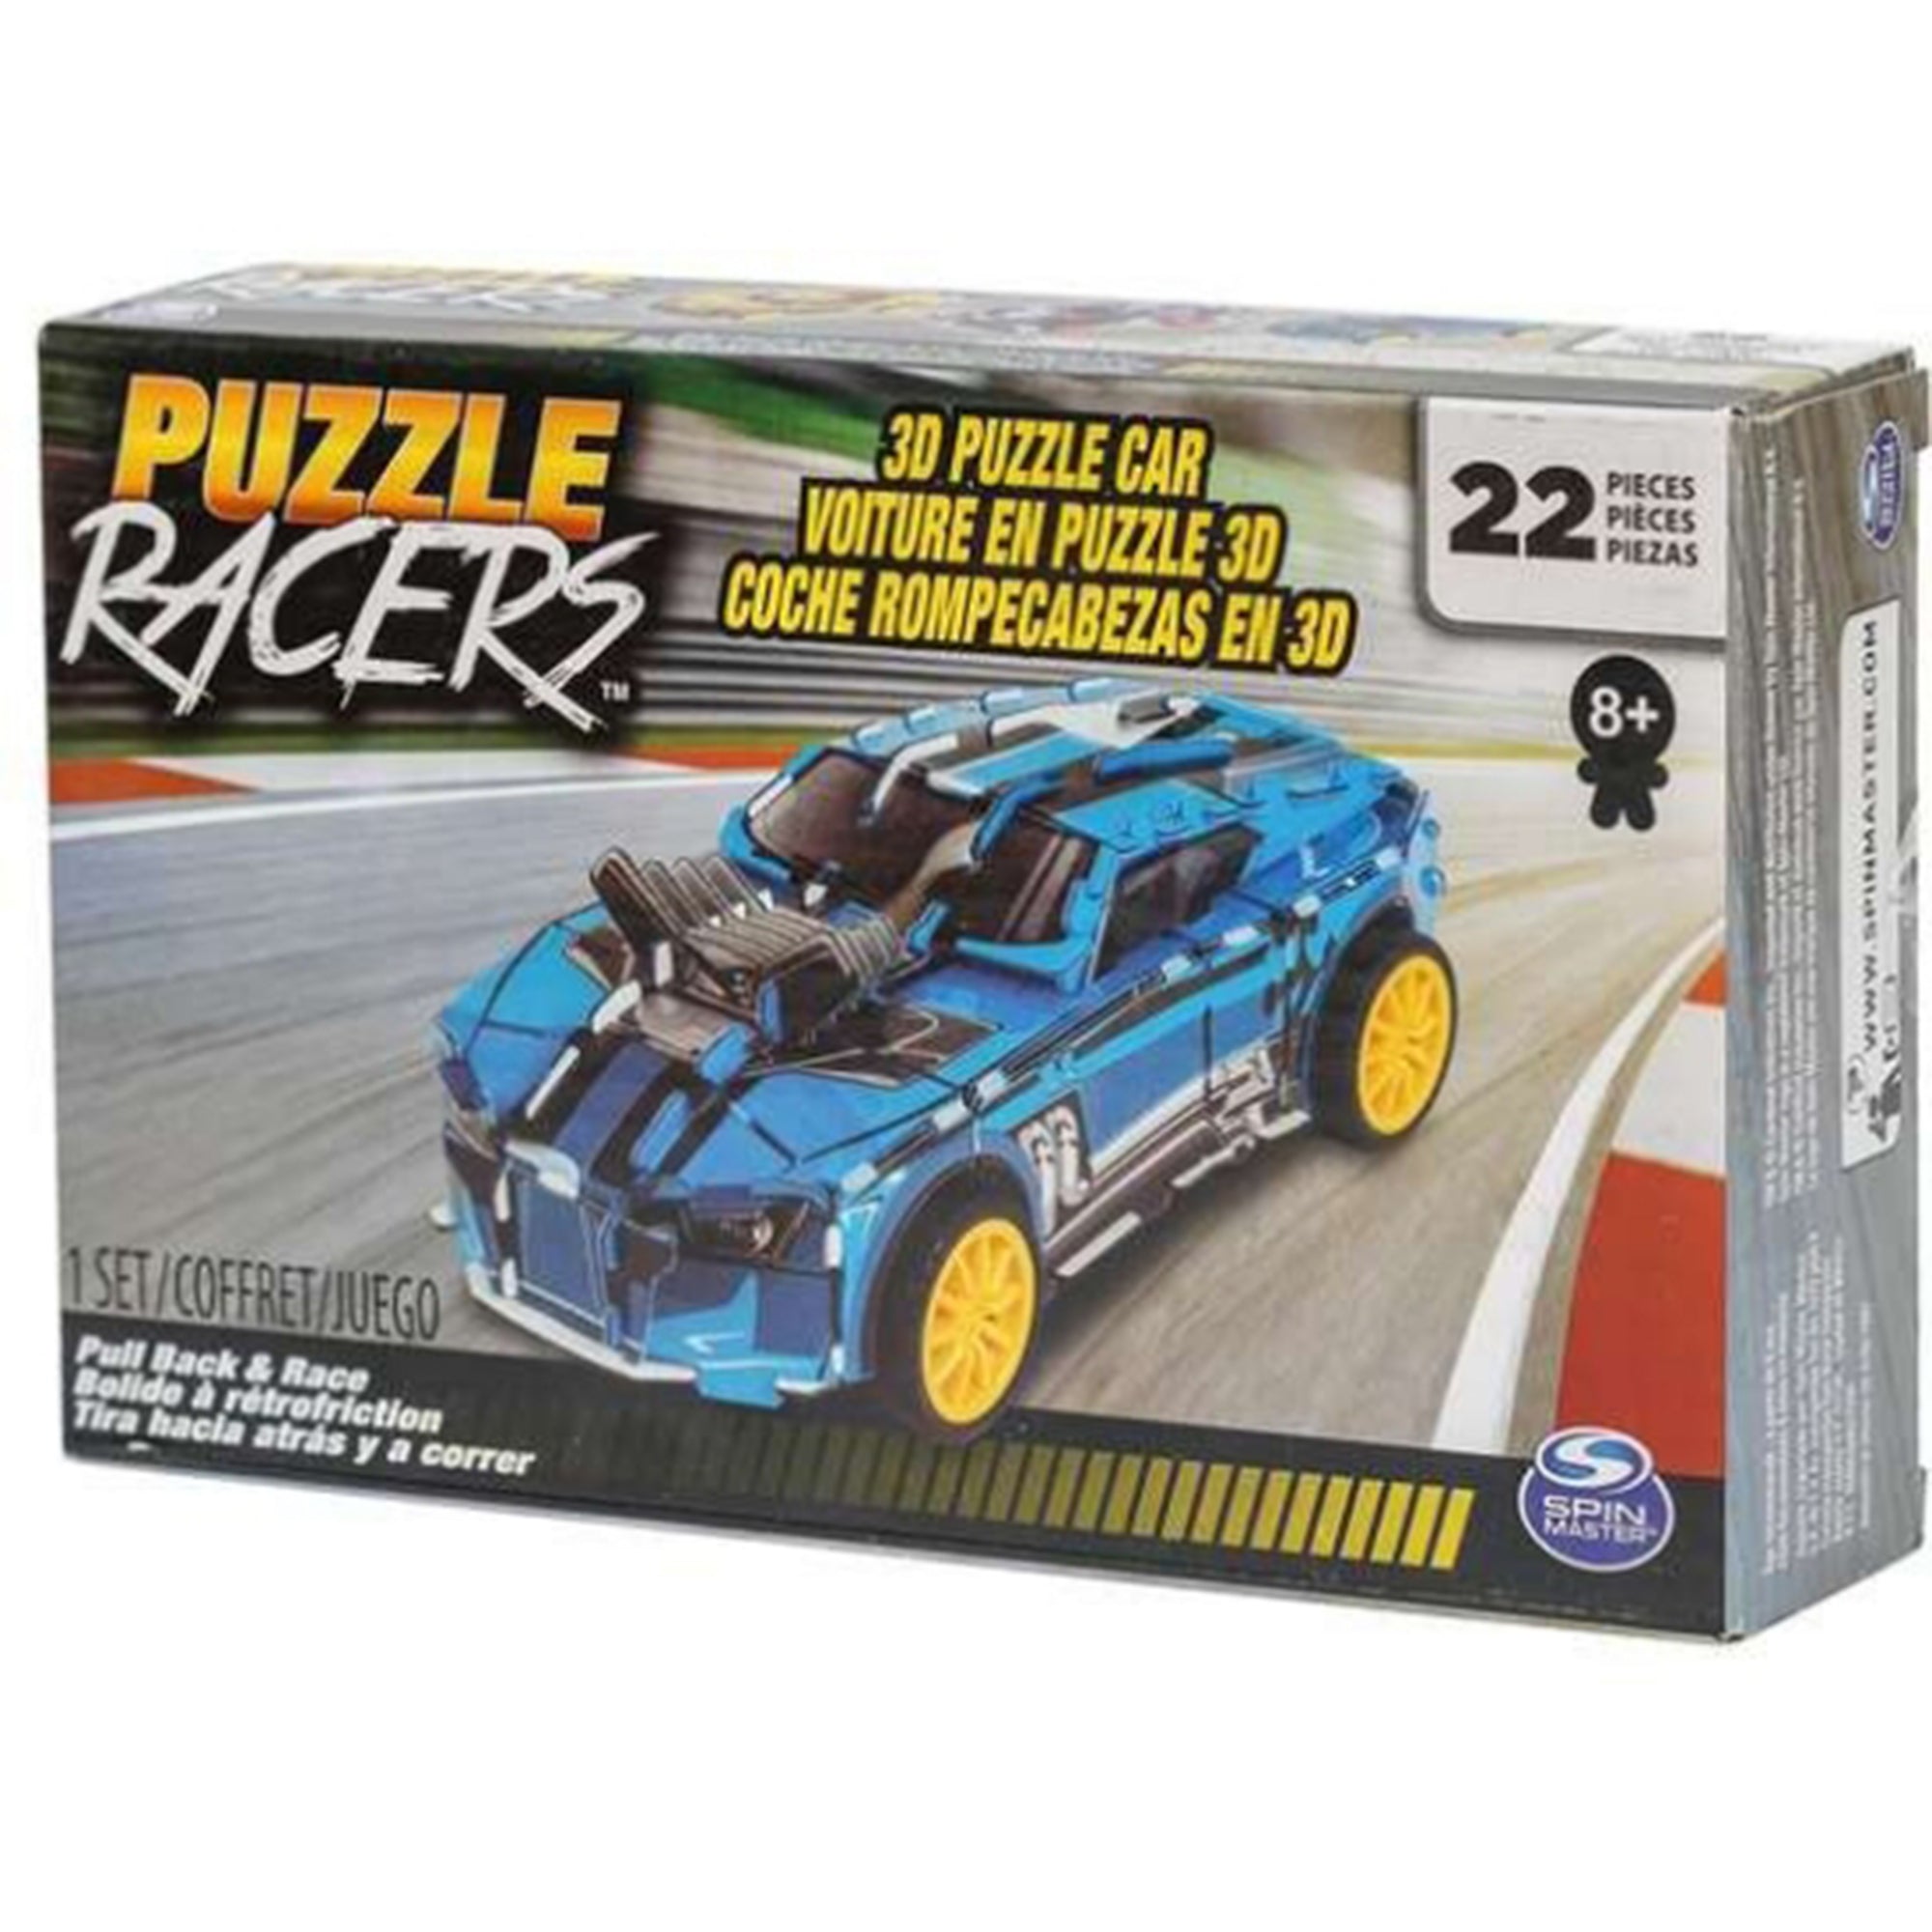 Modellino puzzle 3D racers automobile gioco creaivo 22 pezzi 2810